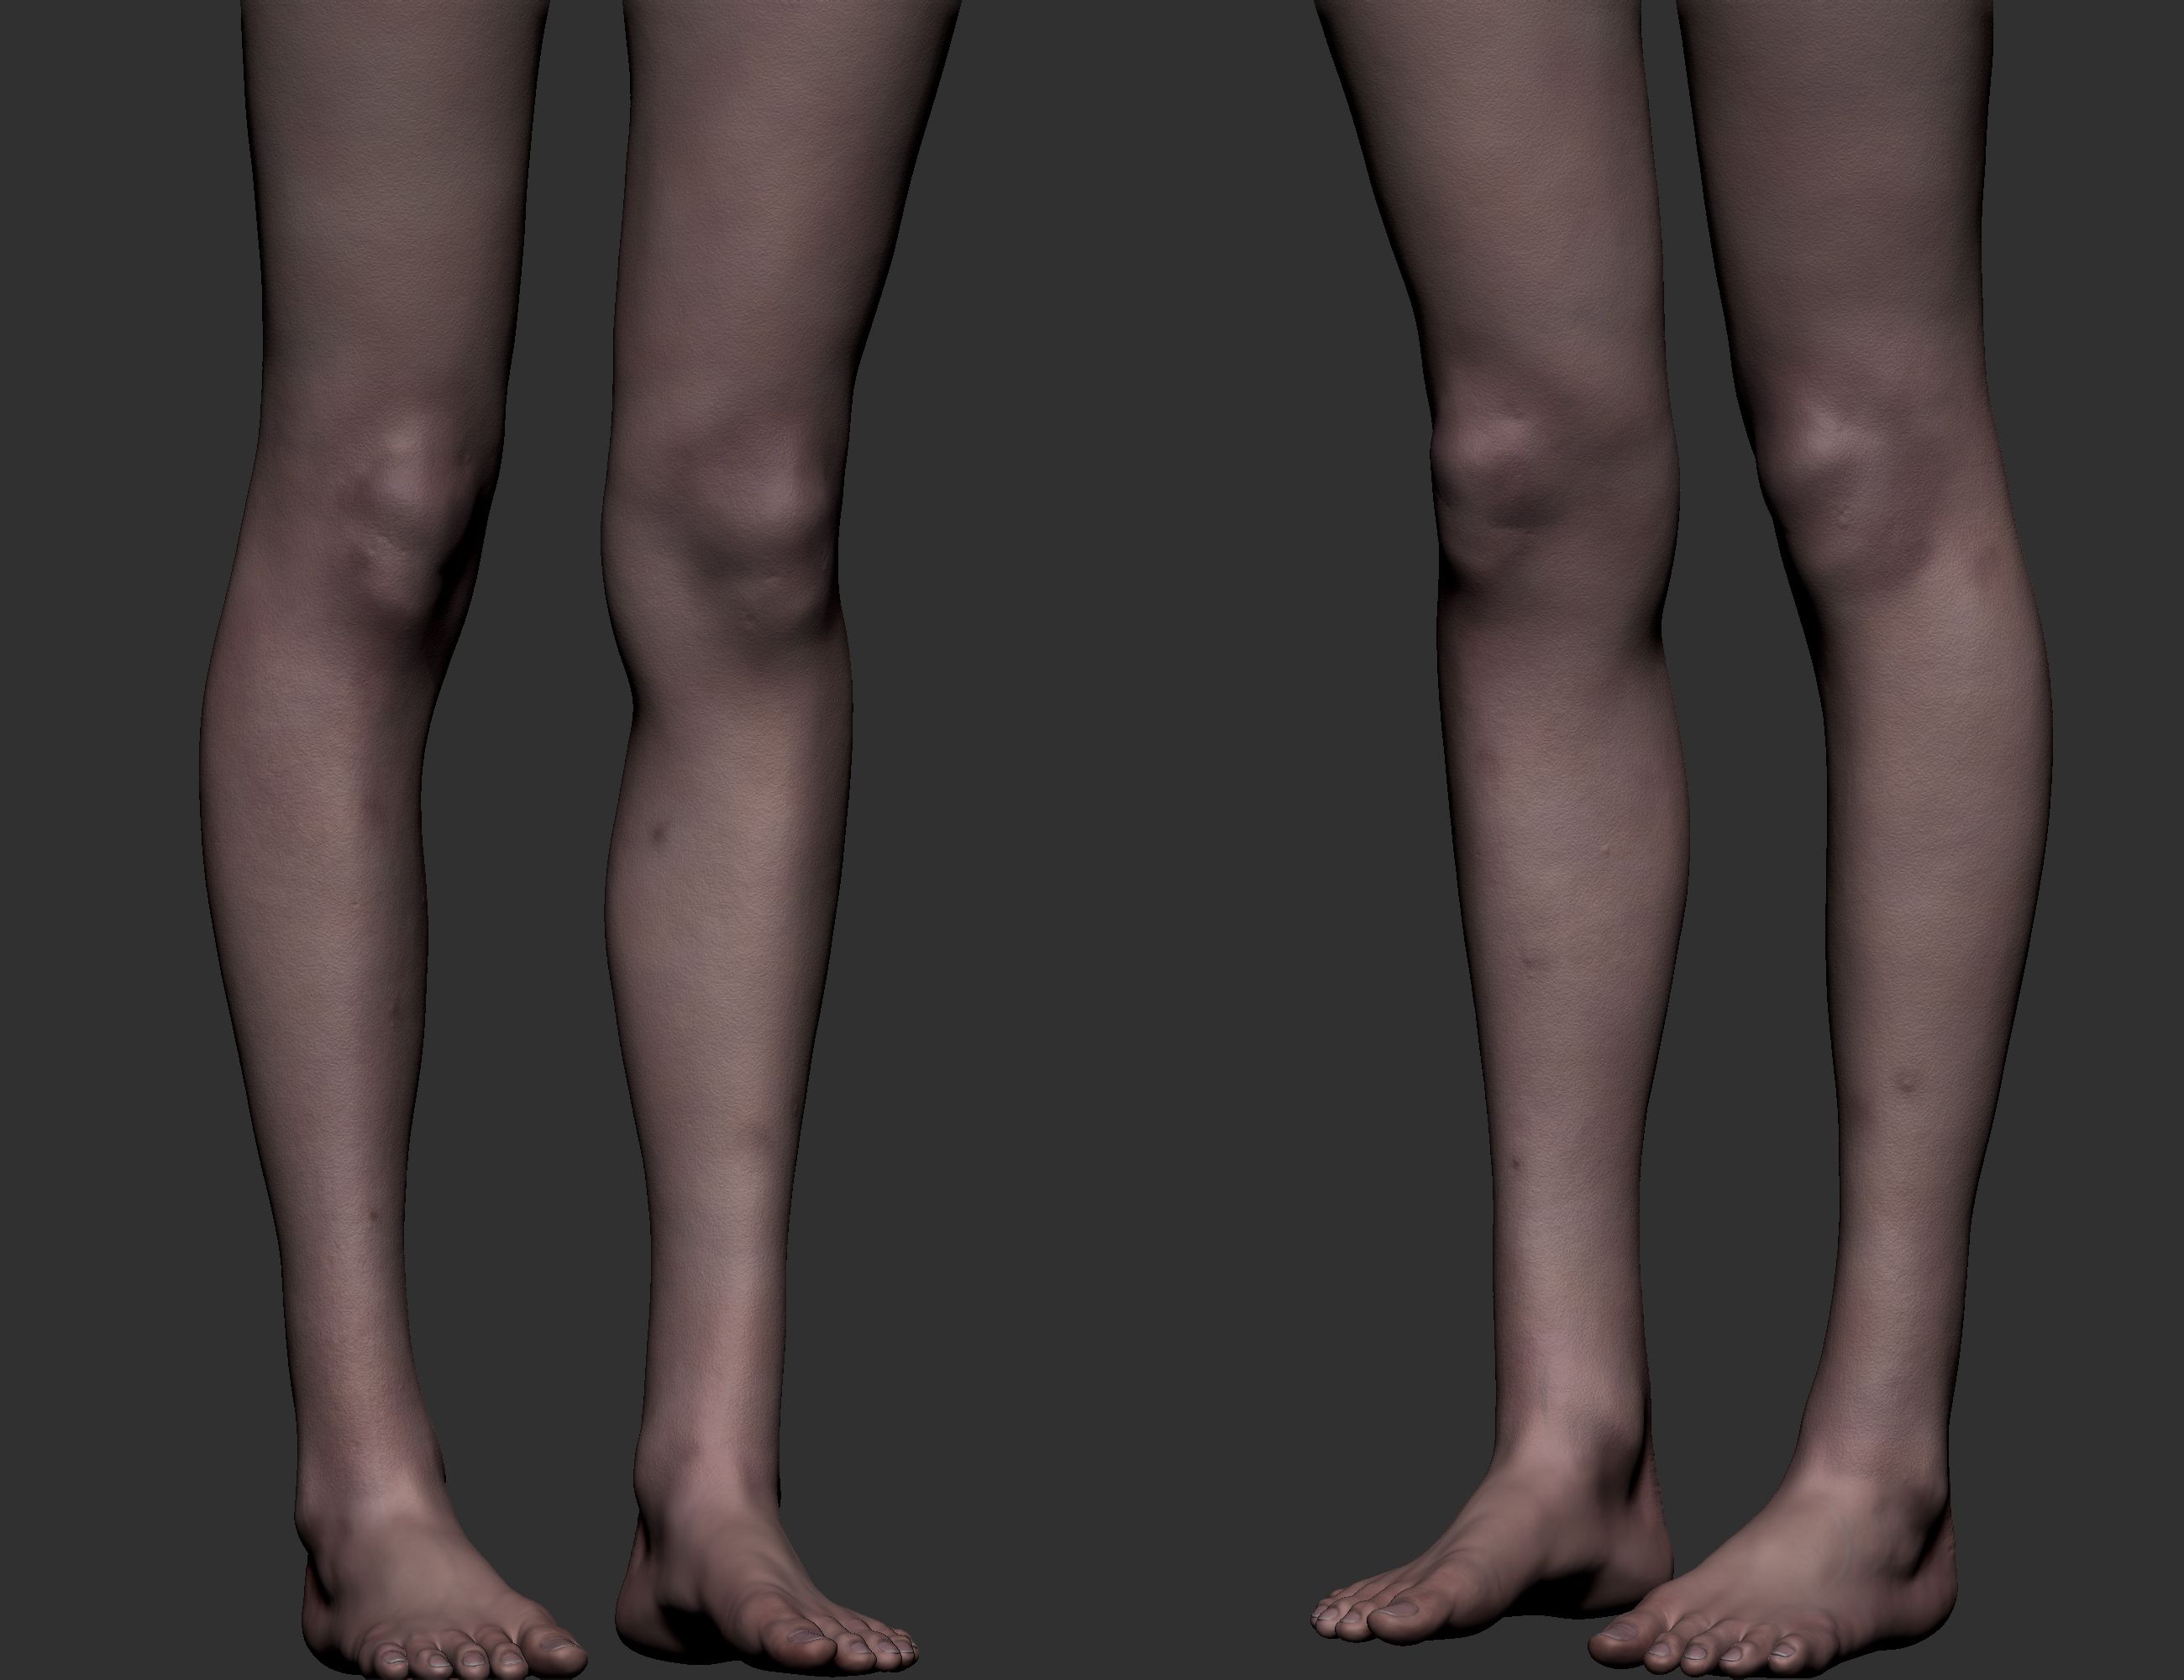 Artstation_02_jpg.jpg Download OBJ file Realistic Female Legs • 3D printing model, GoWireStudios